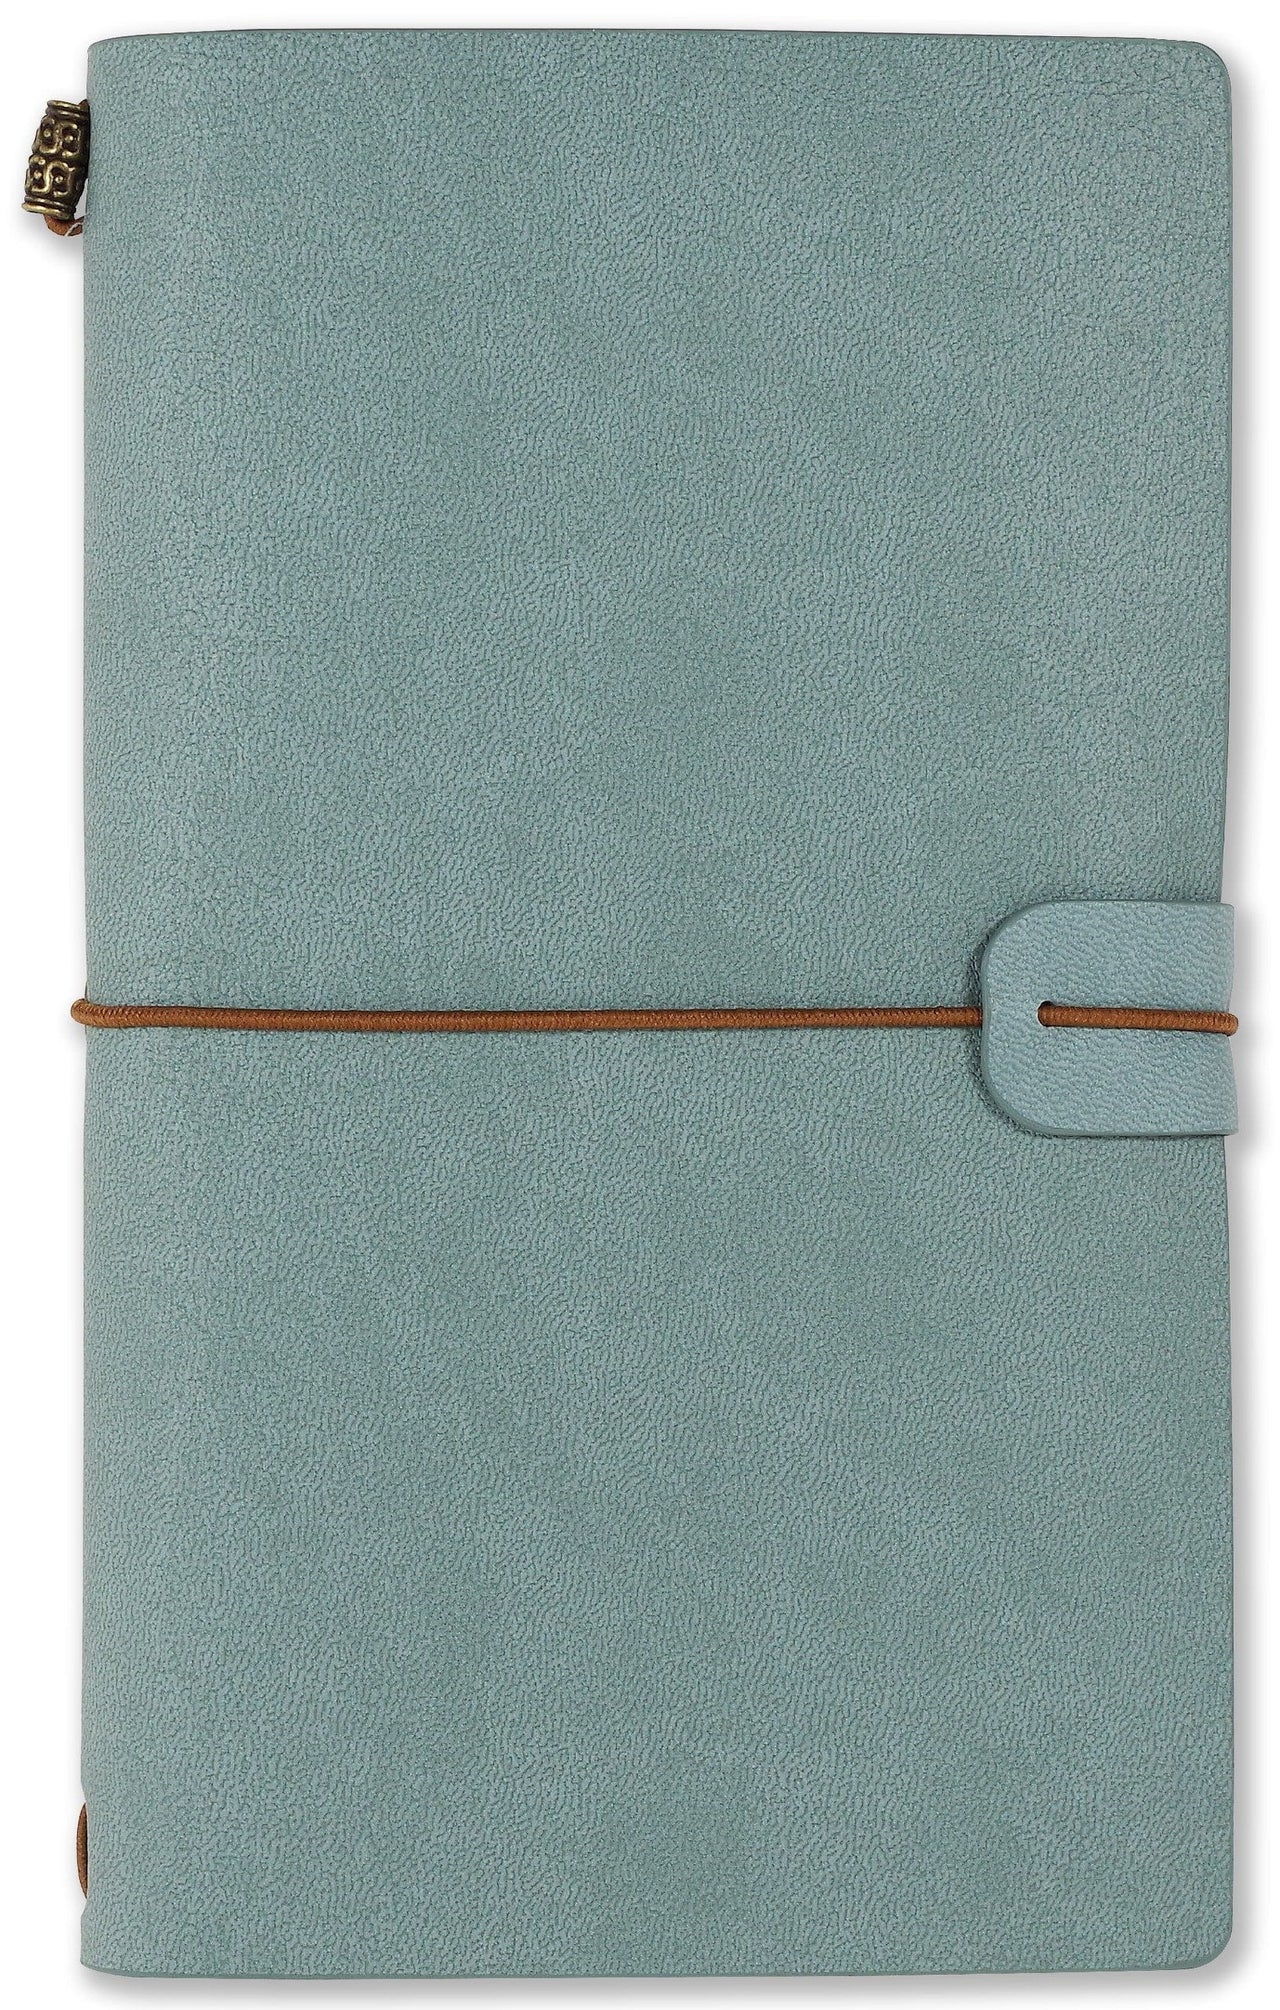 Voyager Notebook and Refills Peter Pauper Press Journal light blue